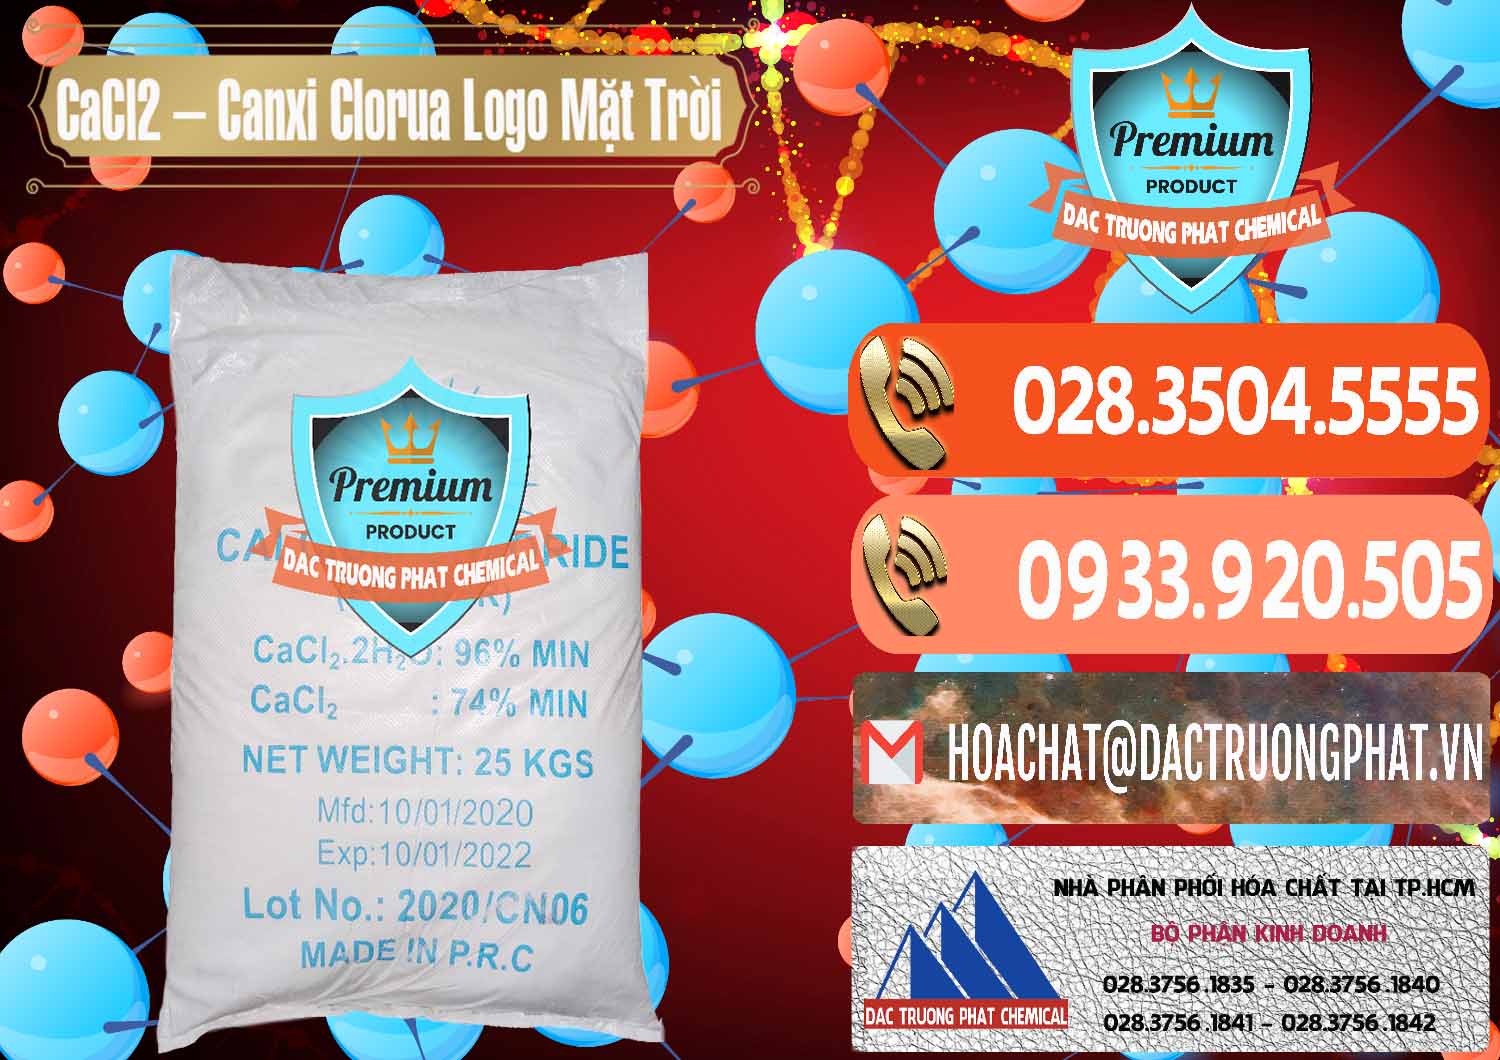 Nơi chuyên bán ( cung cấp ) CaCl2 – Canxi Clorua 96% Logo Mặt Trời Trung Quốc China - 0041 - Đơn vị nhập khẩu ( cung cấp ) hóa chất tại TP.HCM - hoachatmientay.com